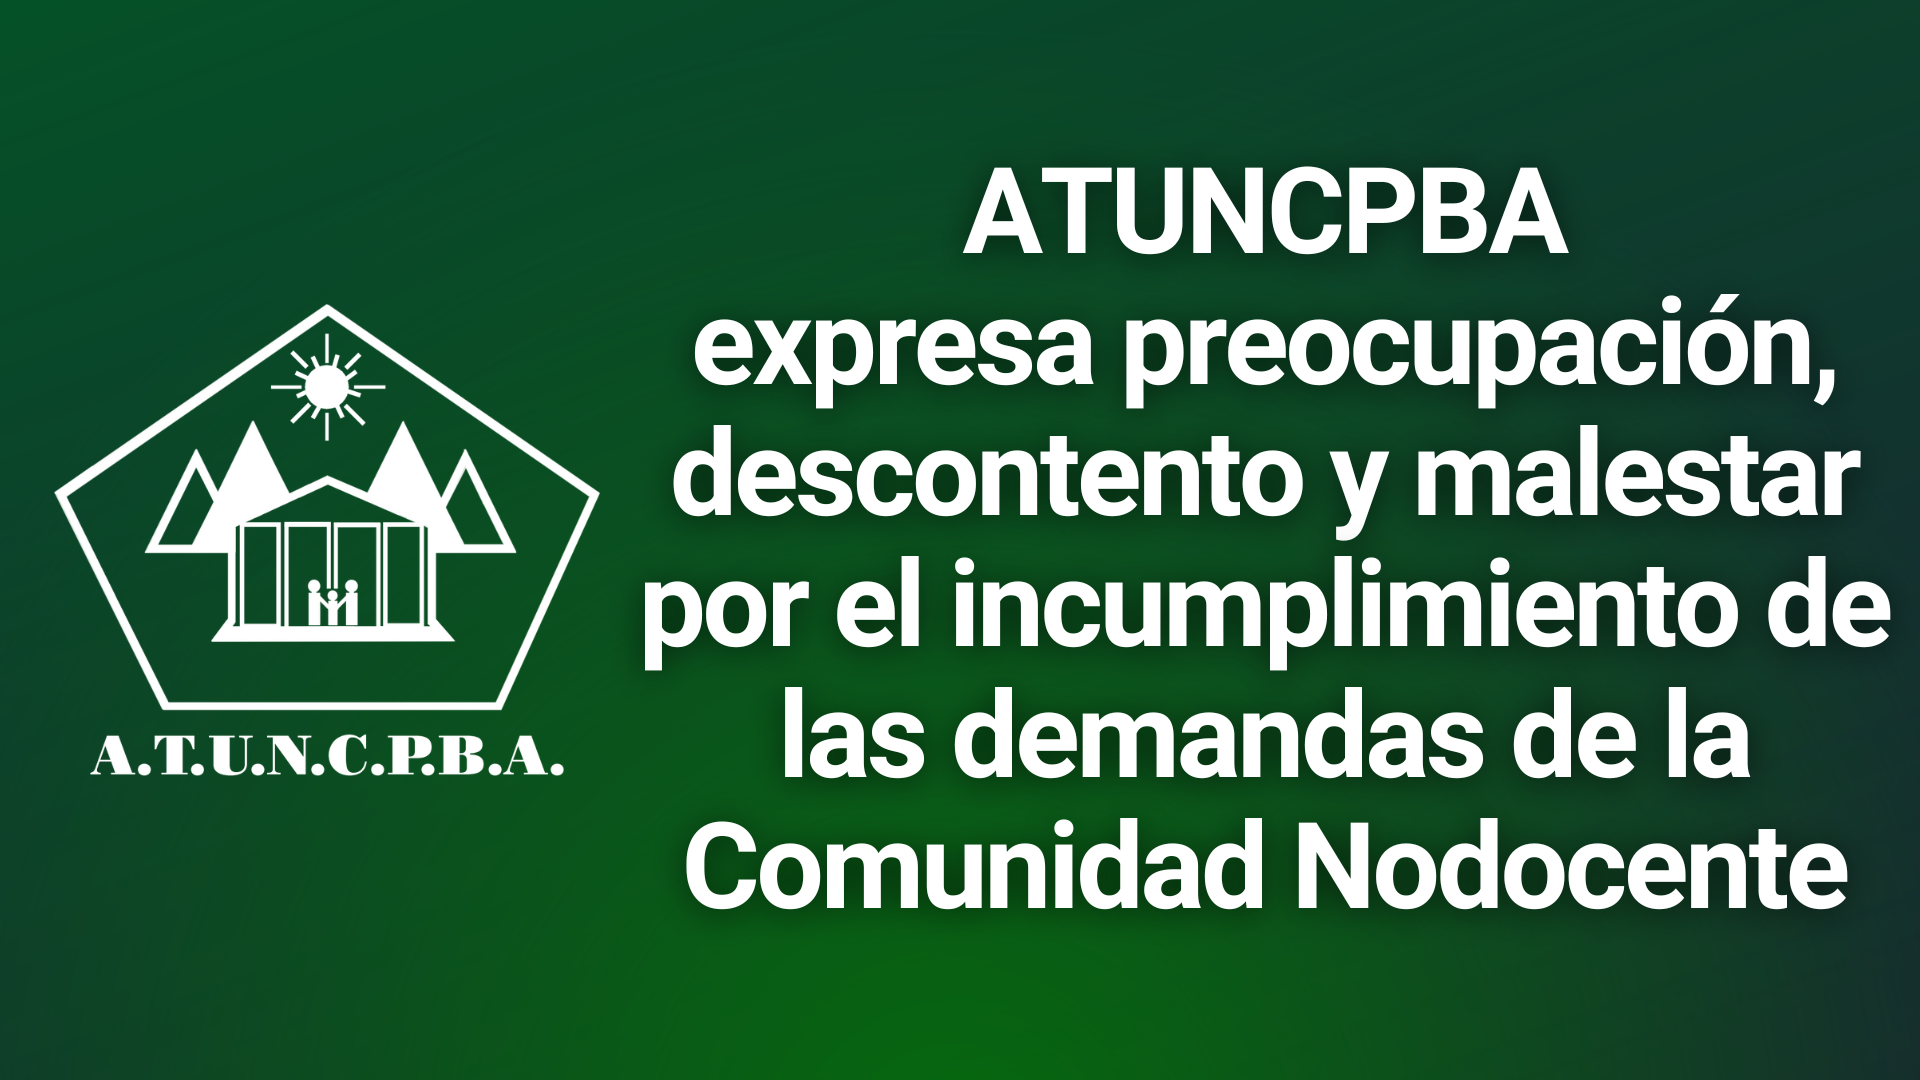 ATUNCPBA expresa preocupación, descontento y malestar por el incumplimiento de las demandas de la Comunidad Nodocente